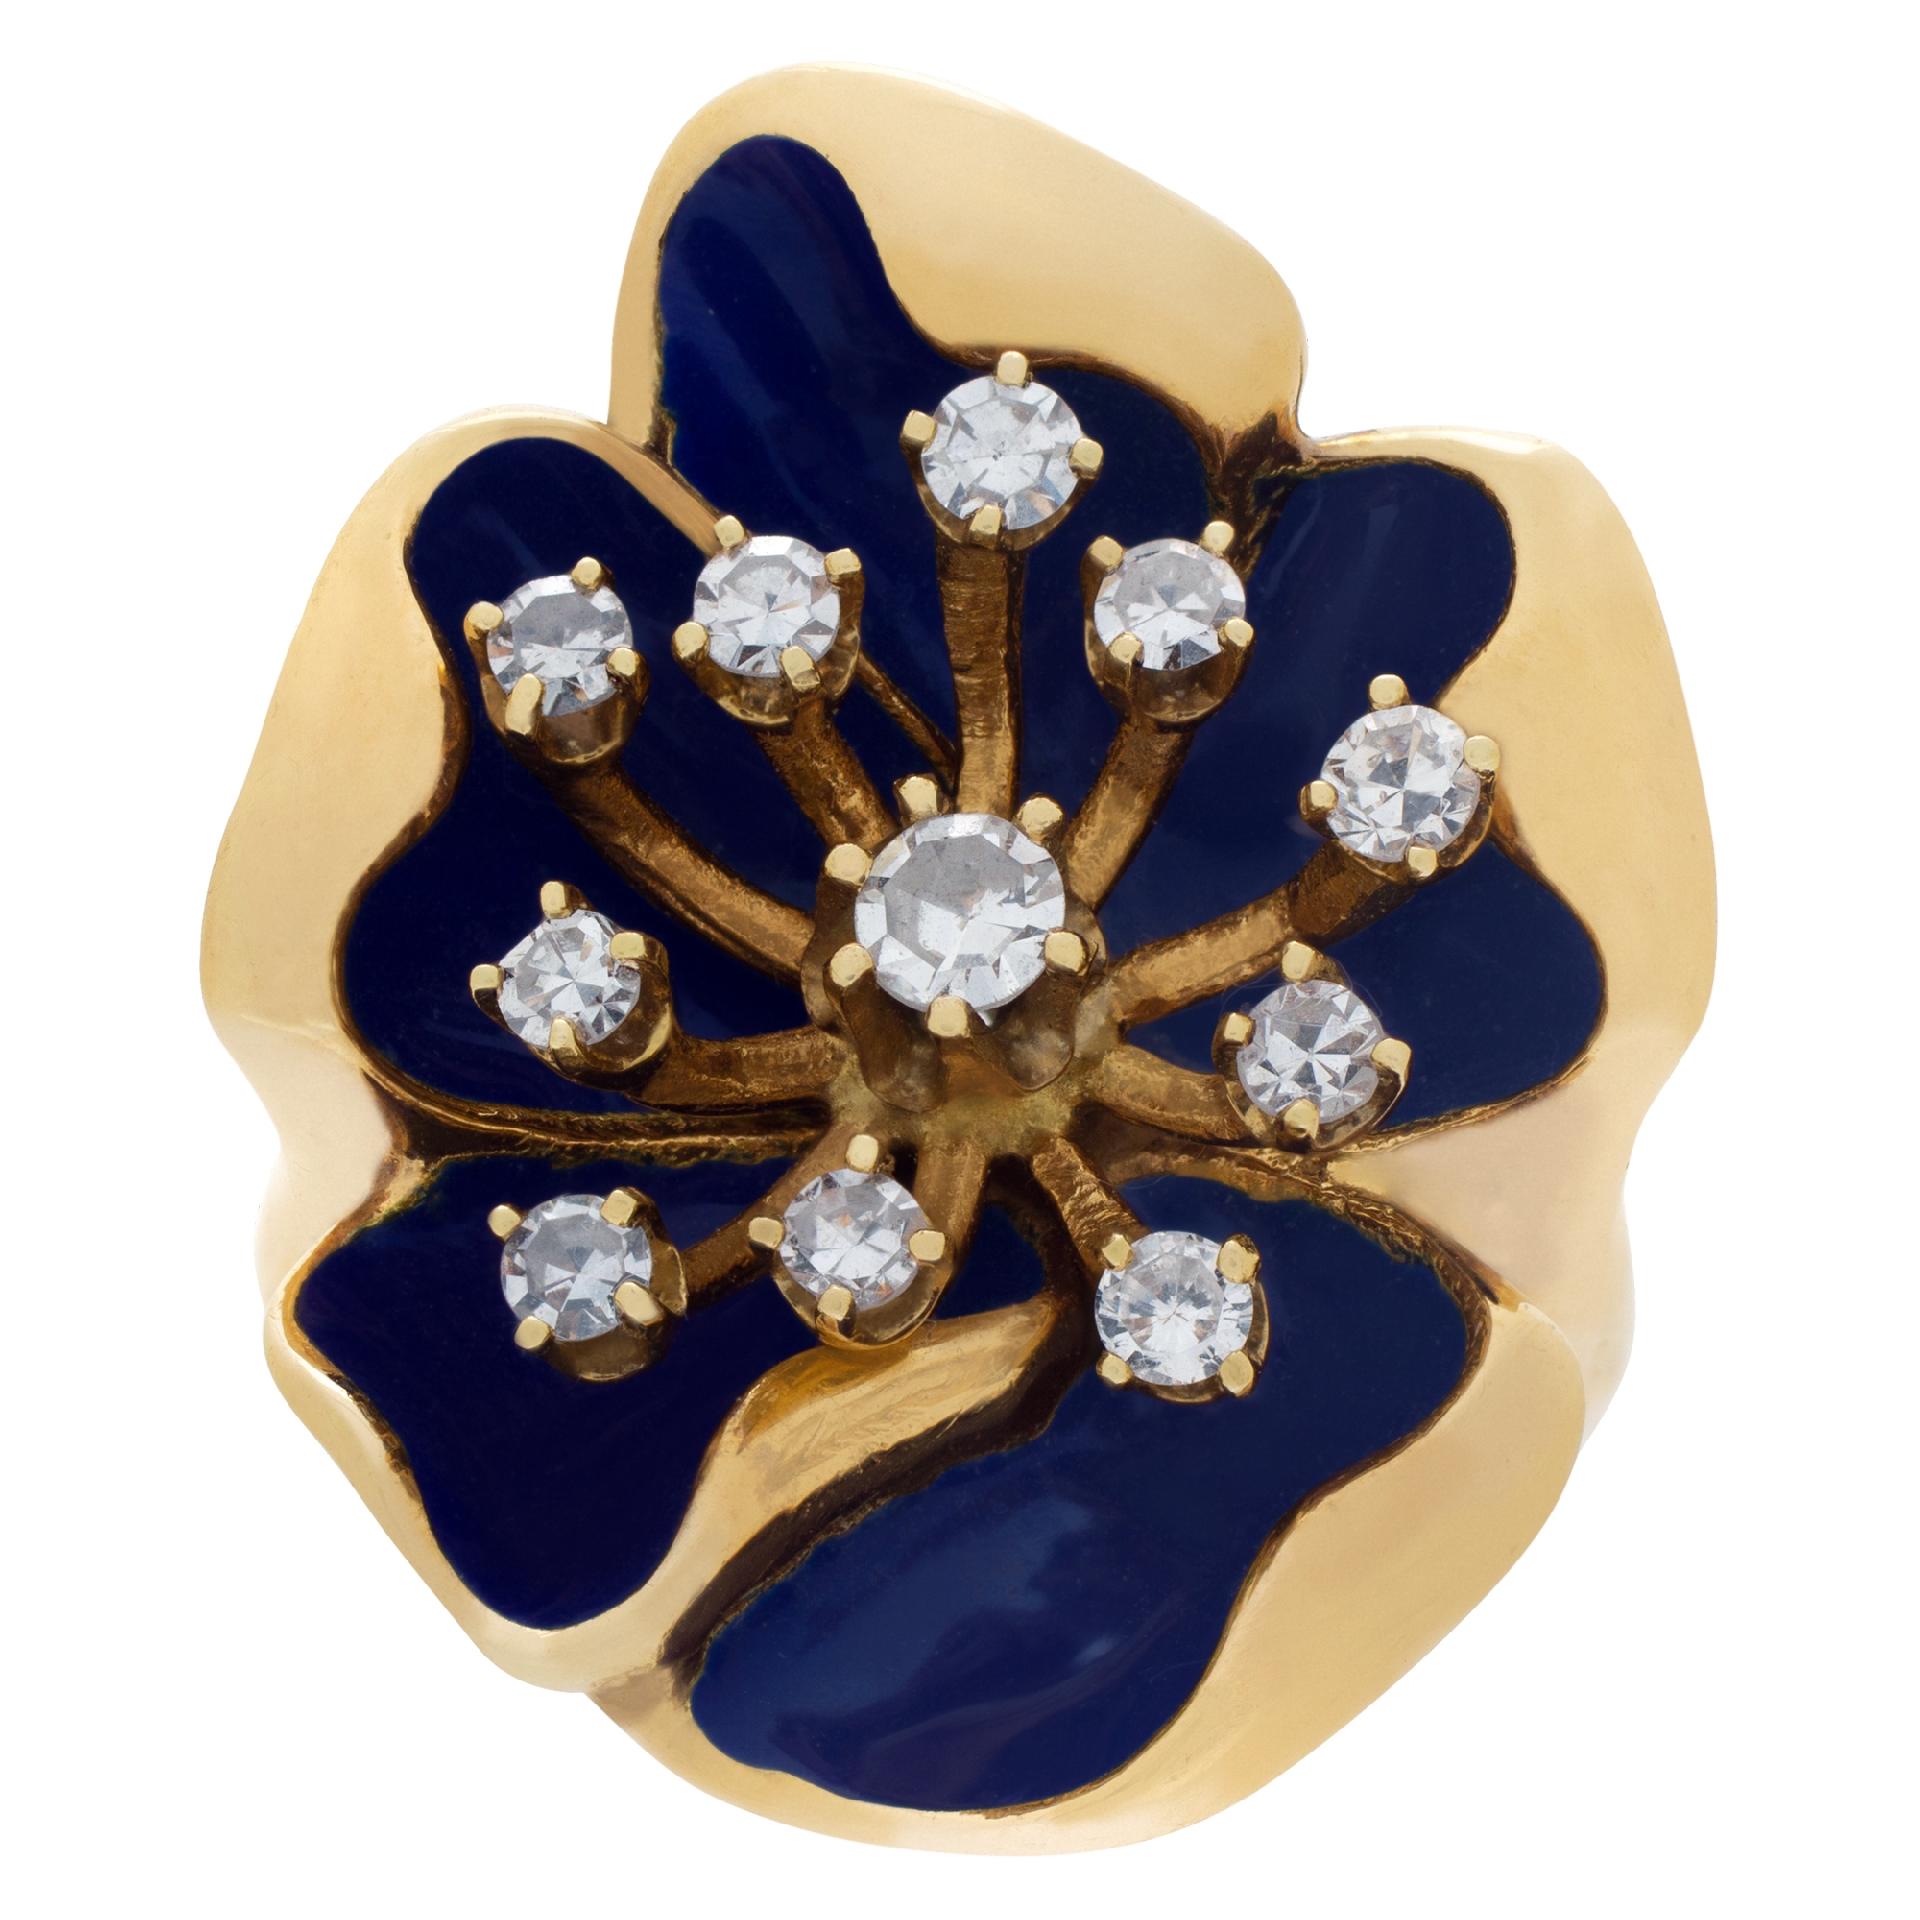 GESCHÄTZTER VERKAUFSPREIS: $2.640,00   IHR PREIS: $1.900,00
Blumenförmiger Ring mit blauer Emaille und 0,30 Karat Diamanten in 14k. 
Ring ist 0,95